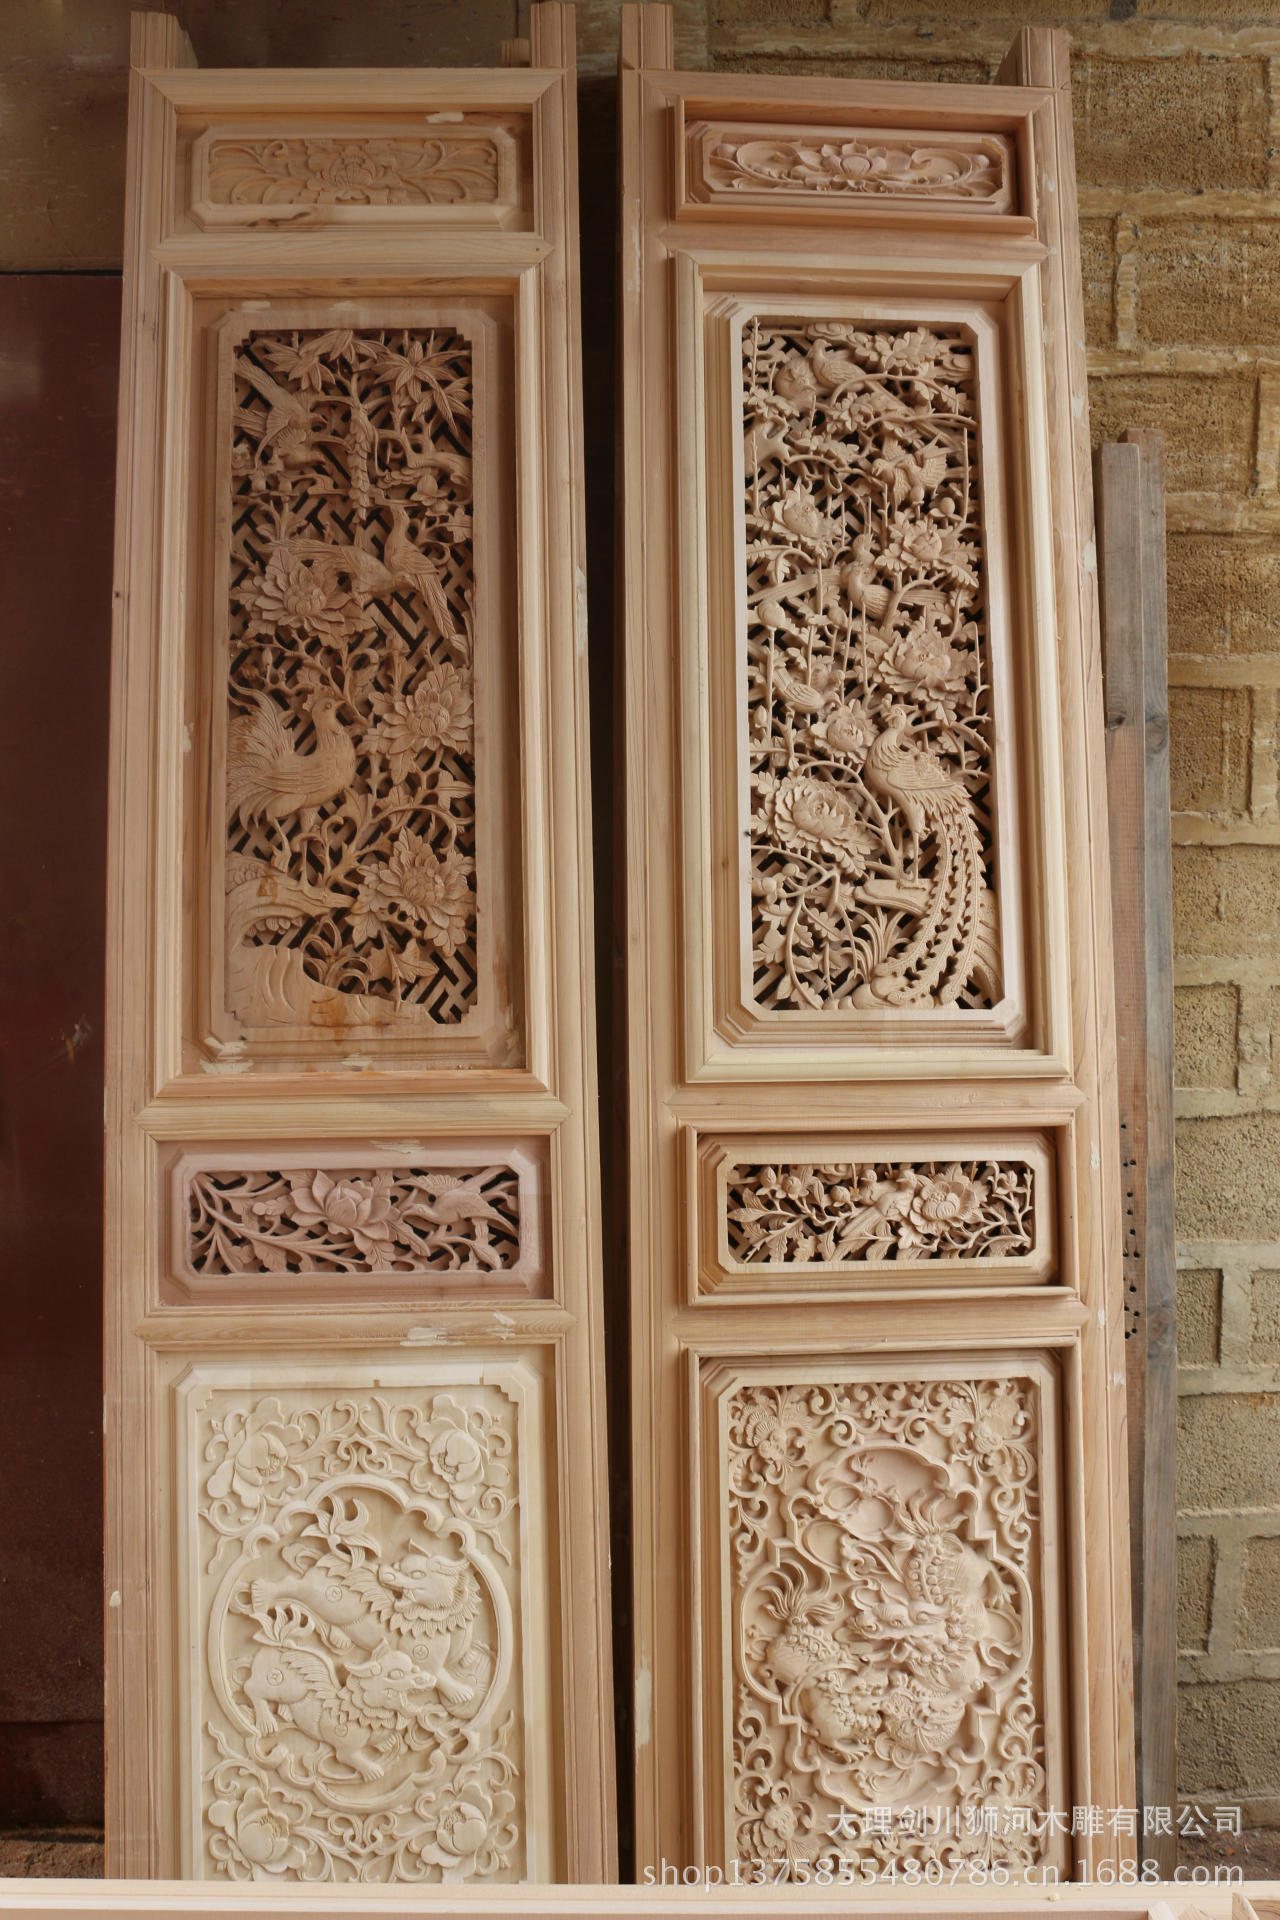 剑川白族特色六合门,纯手工雕刻,三层花格子门